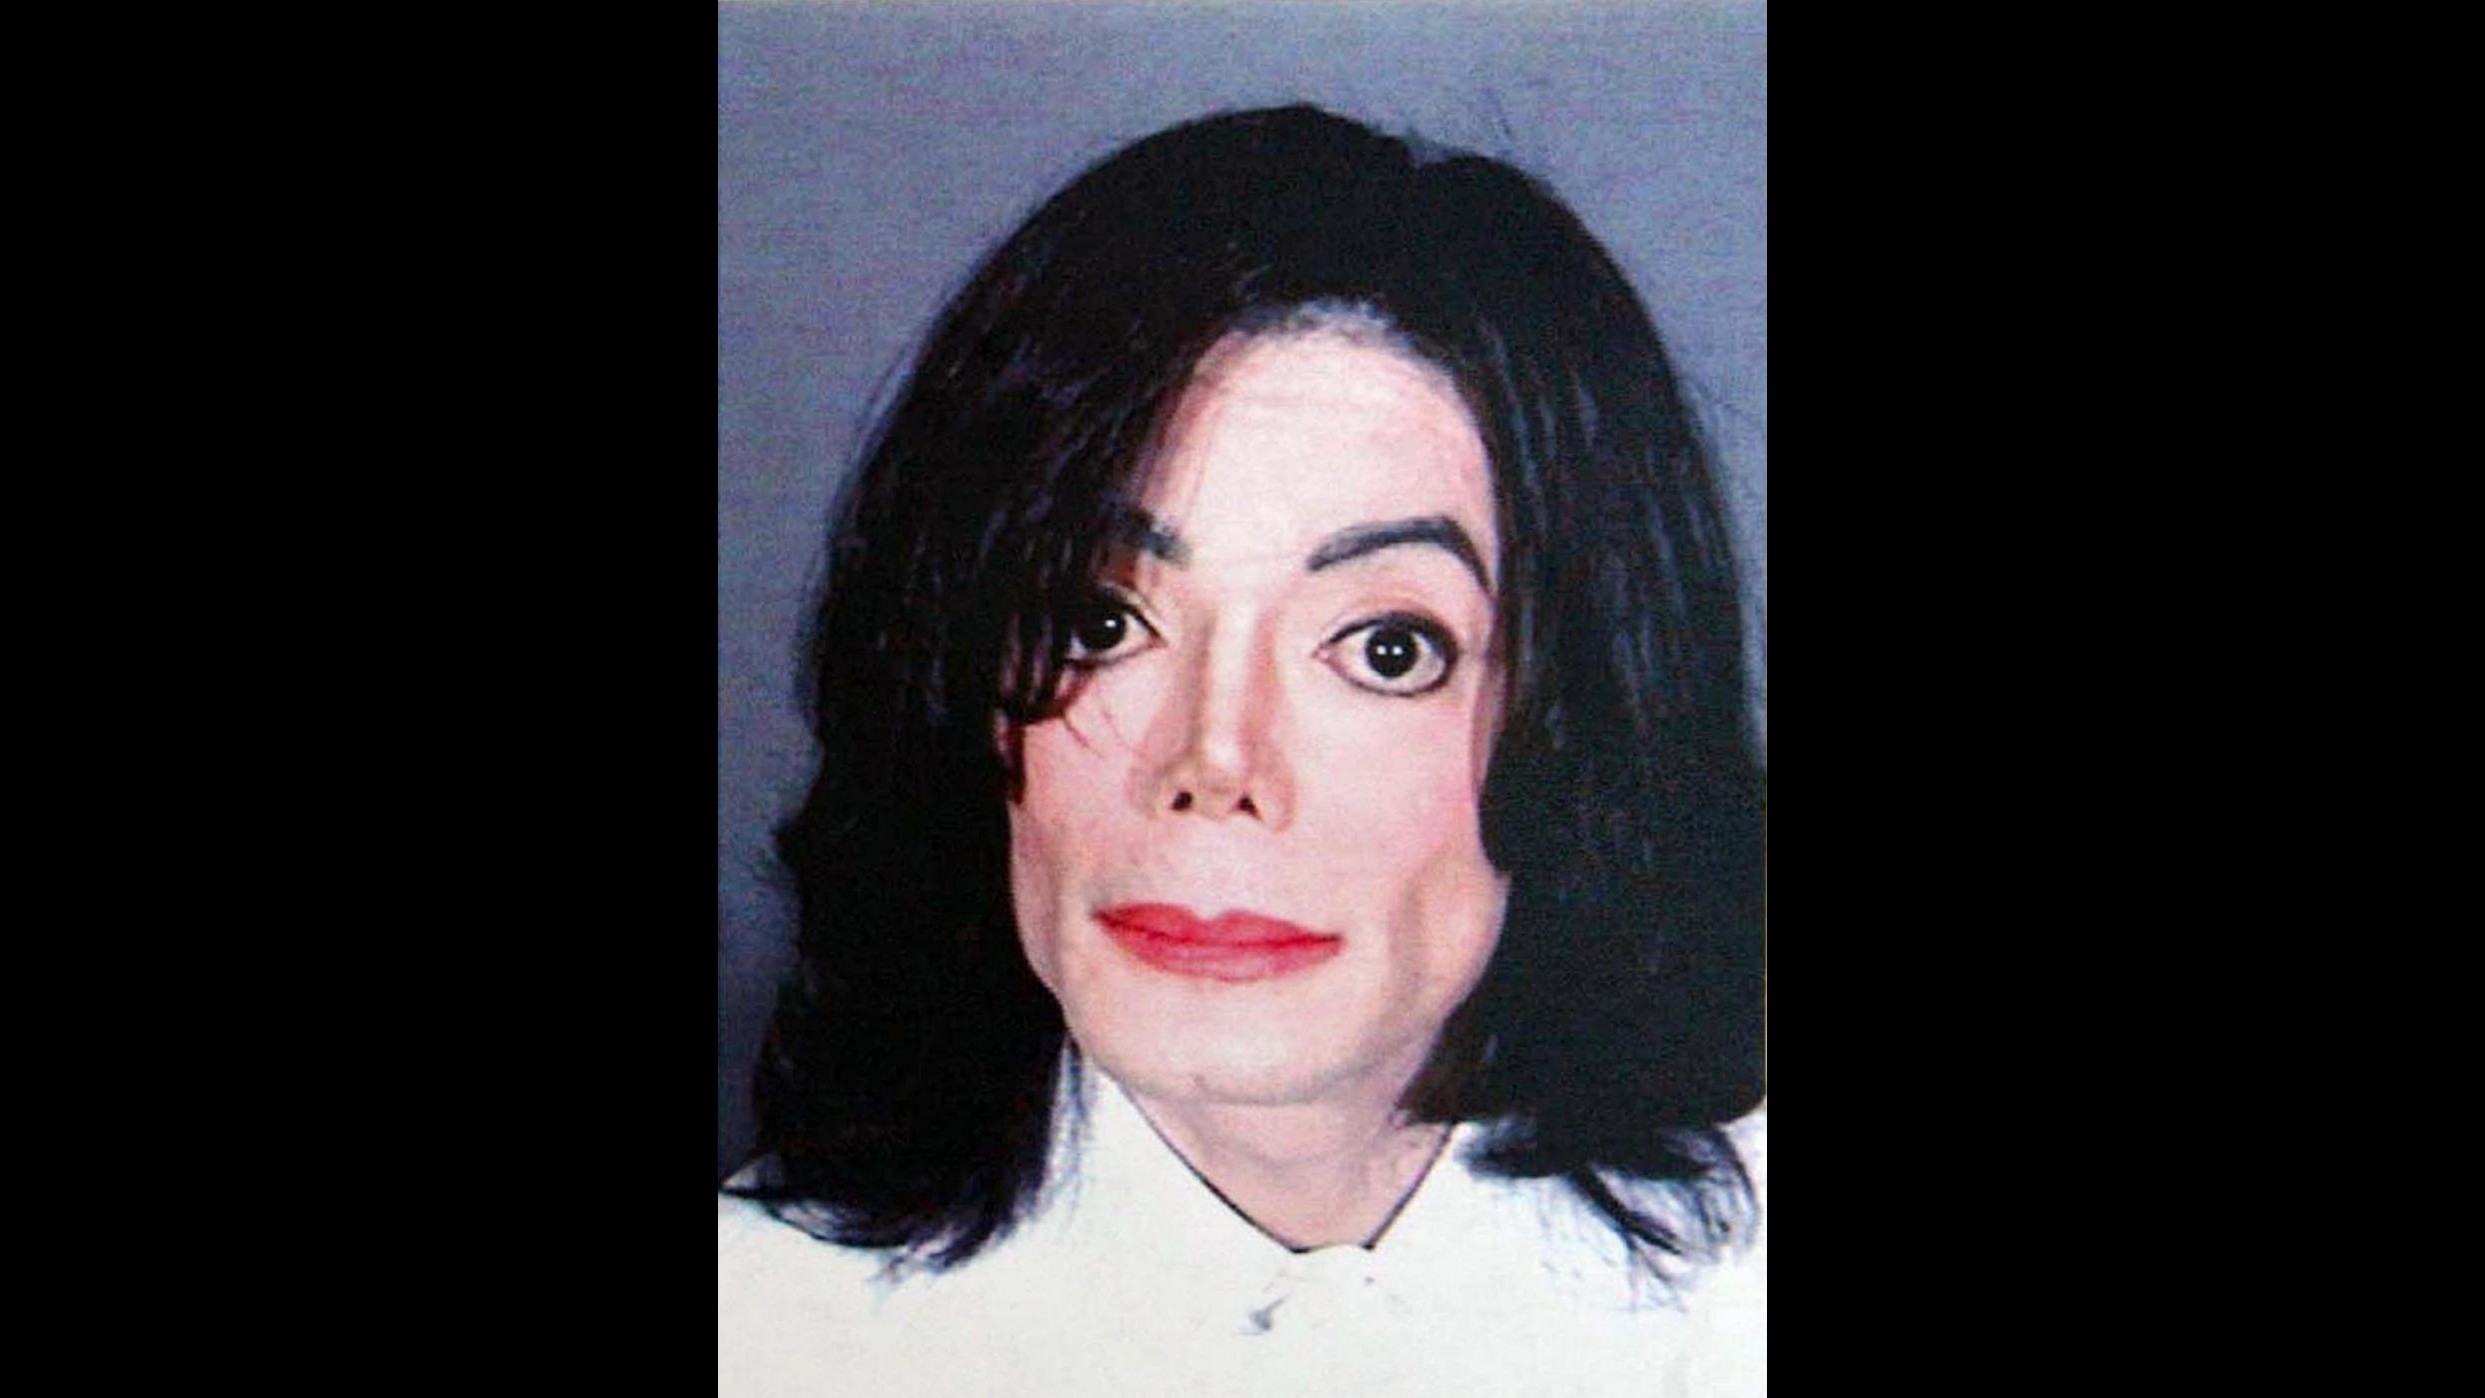 Report choc: In villa Michael Jackson foto bambini nudi e torture